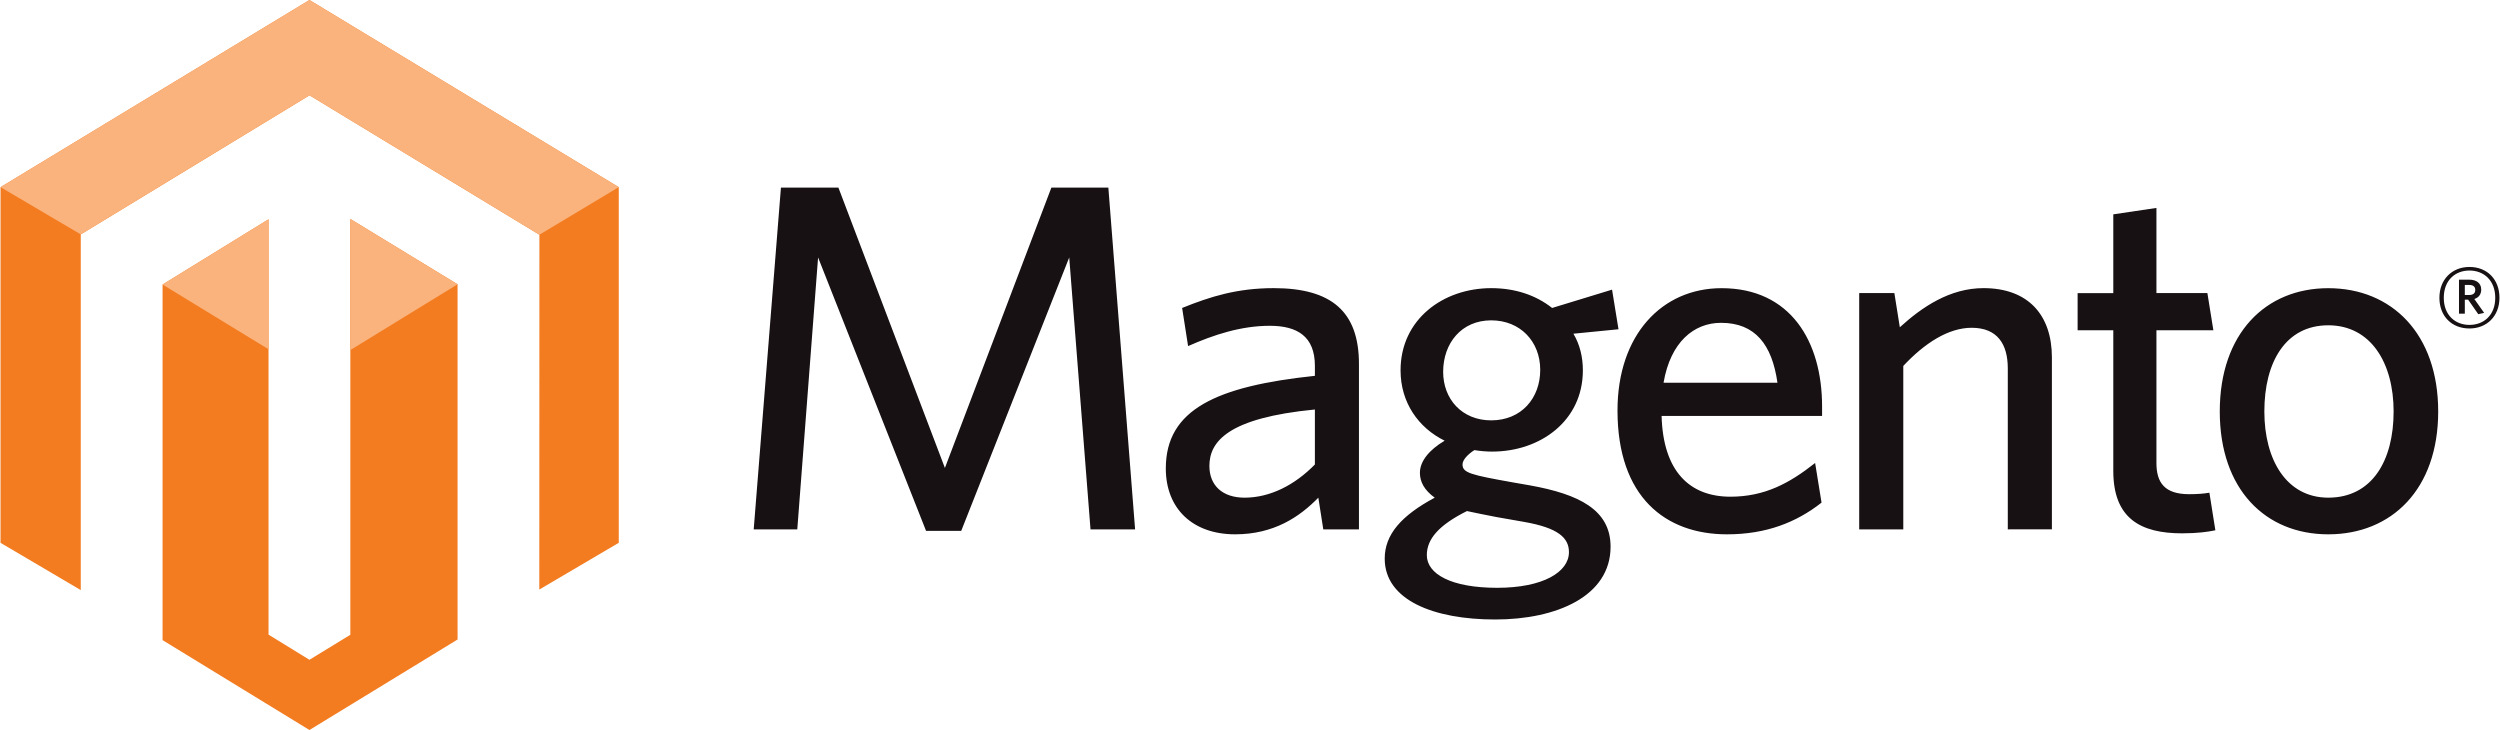 Magento 2 Logo - Magento 2 Lo